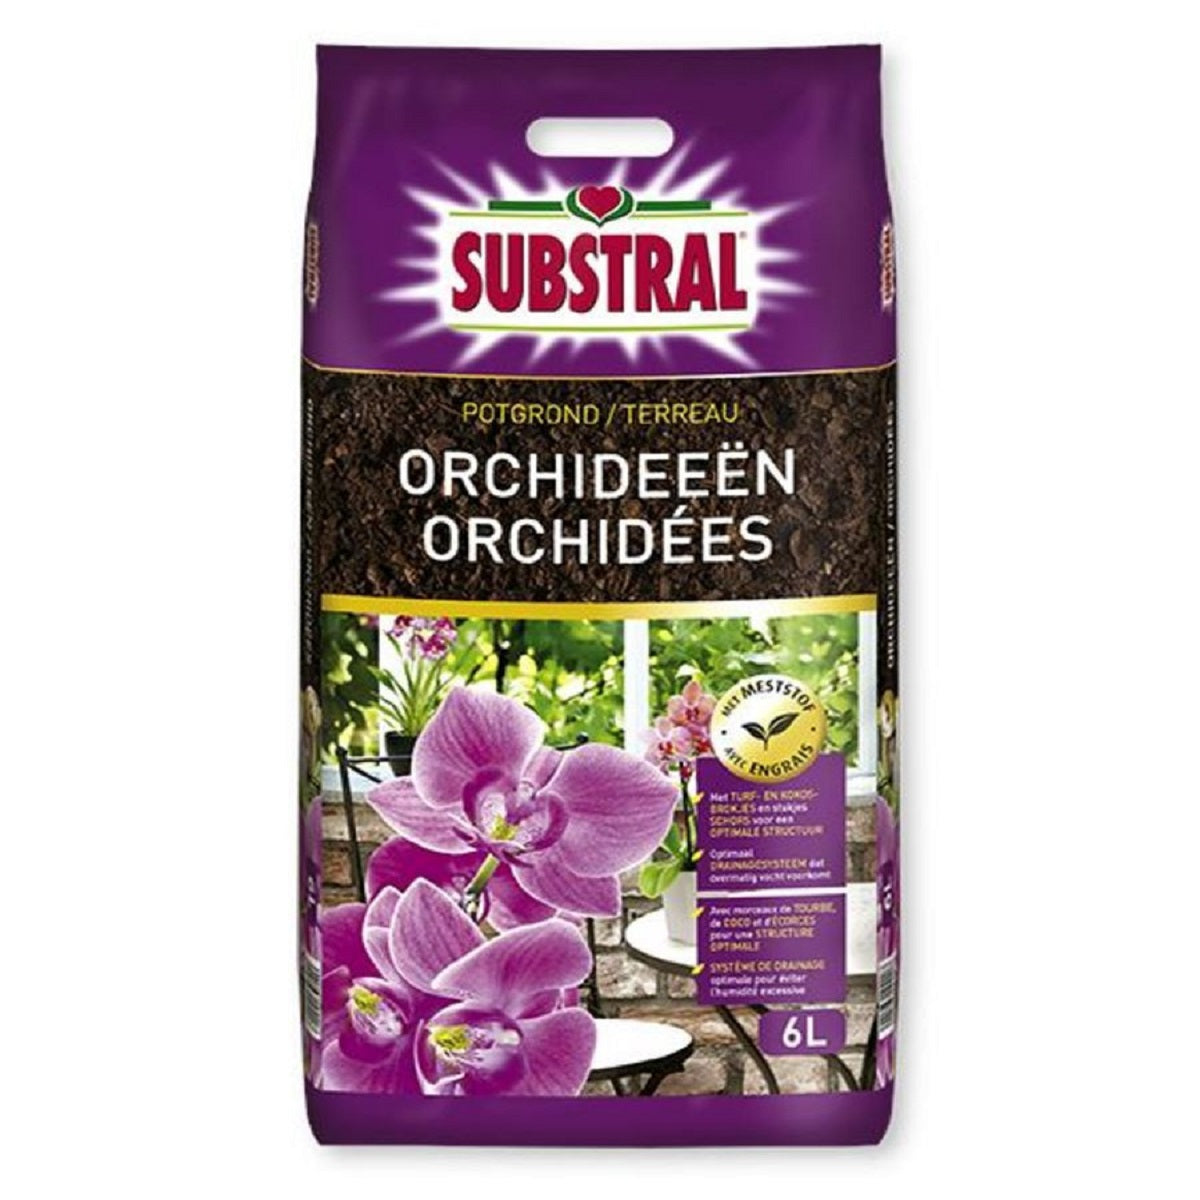 Pack 2 engrais organiques spécial orchidée (2 x 50 g) - Orchidee Facile by  Natural Element